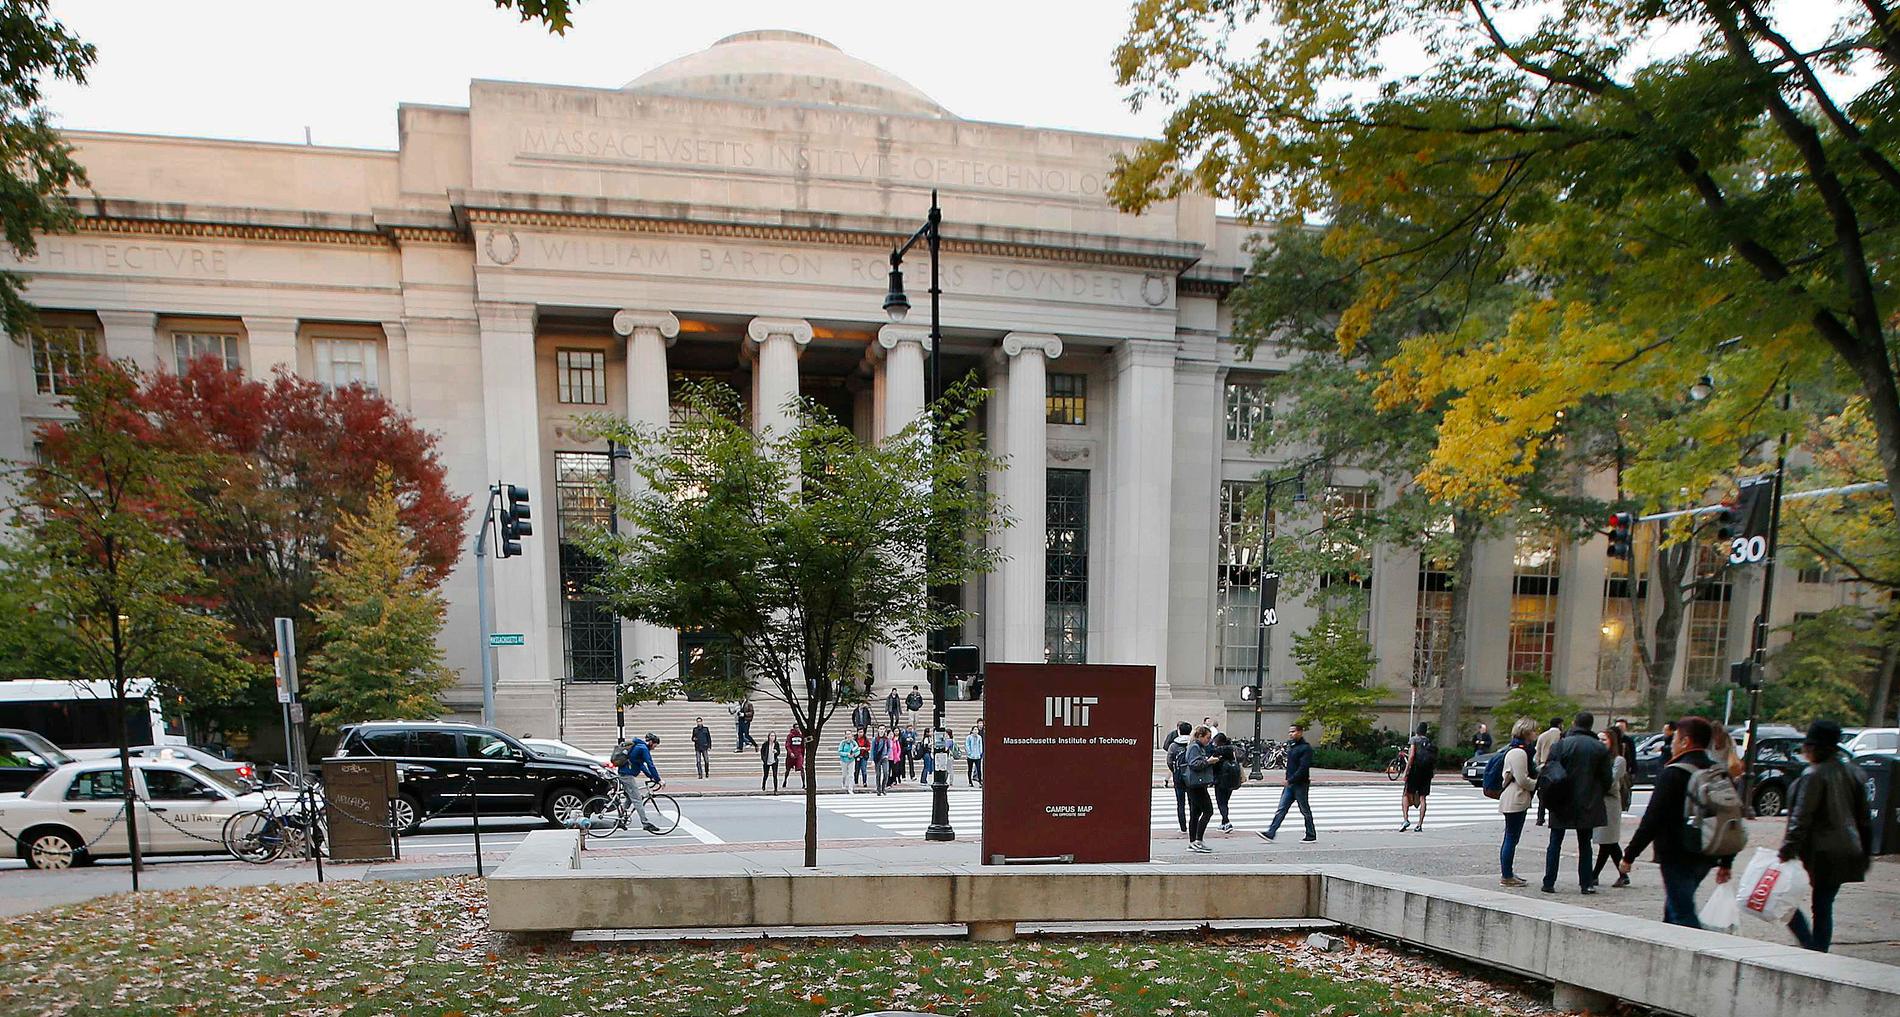 Världens bästa universitet är Massachusetts Institute of Technology (MIT) som ligger i Cambridge i nordöstra USA.